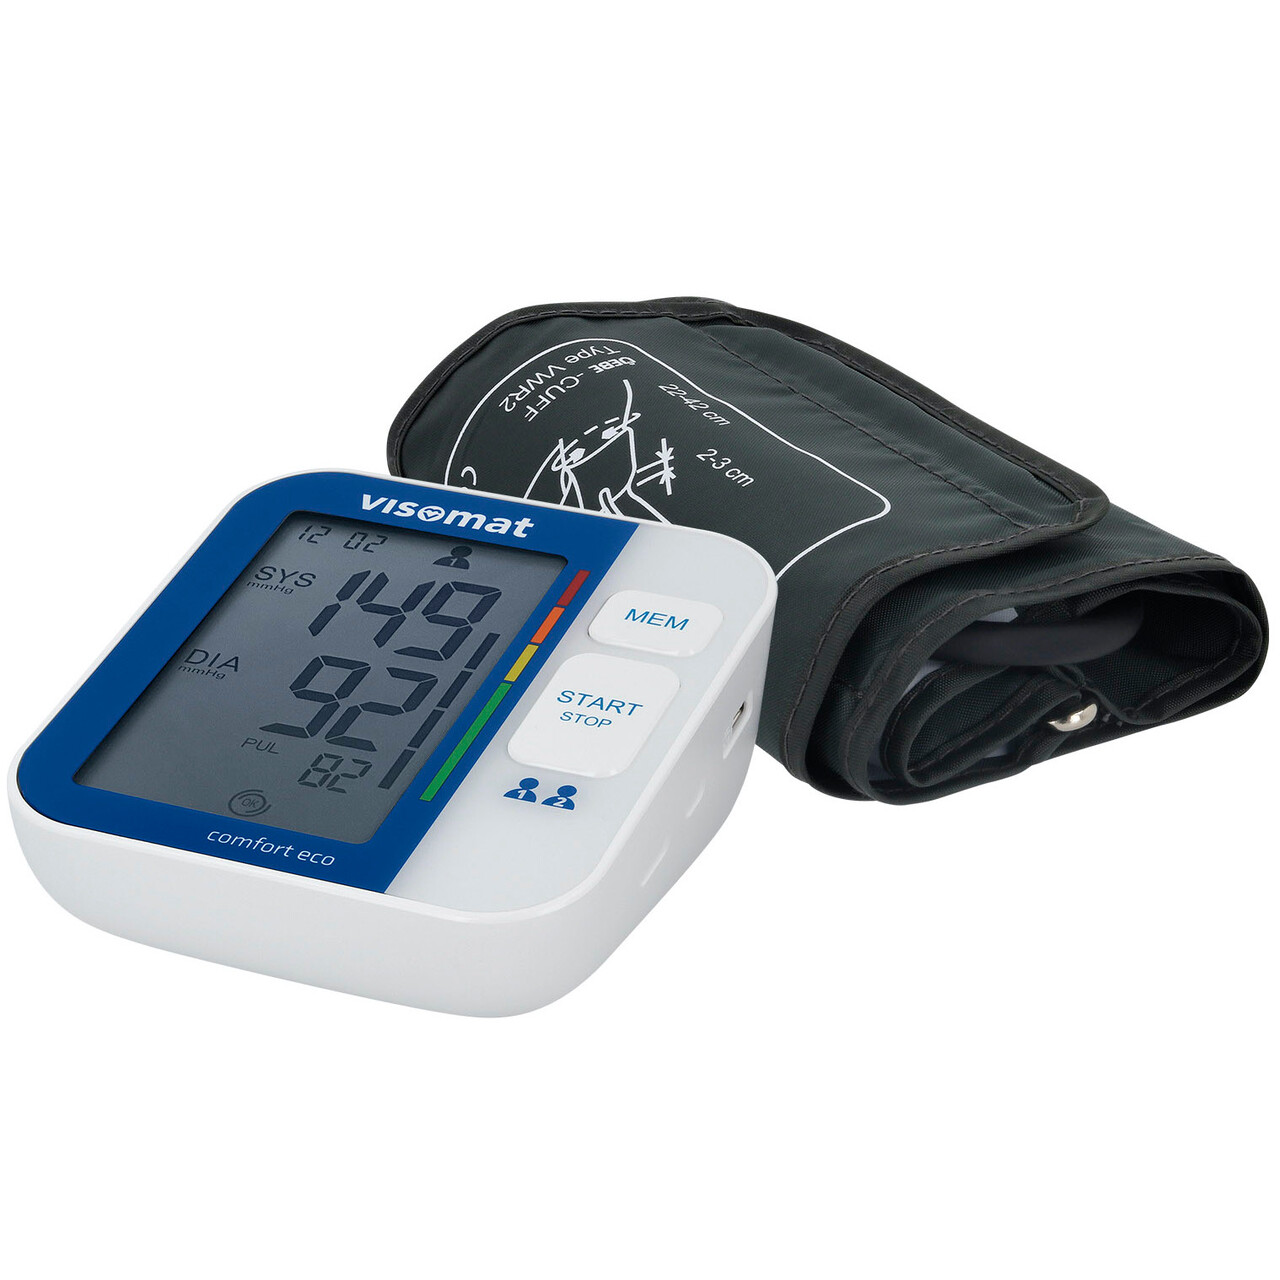 Blodtryksmåler - Microlife BP Comfort PC | Skånsom og hurtig måling | Køb